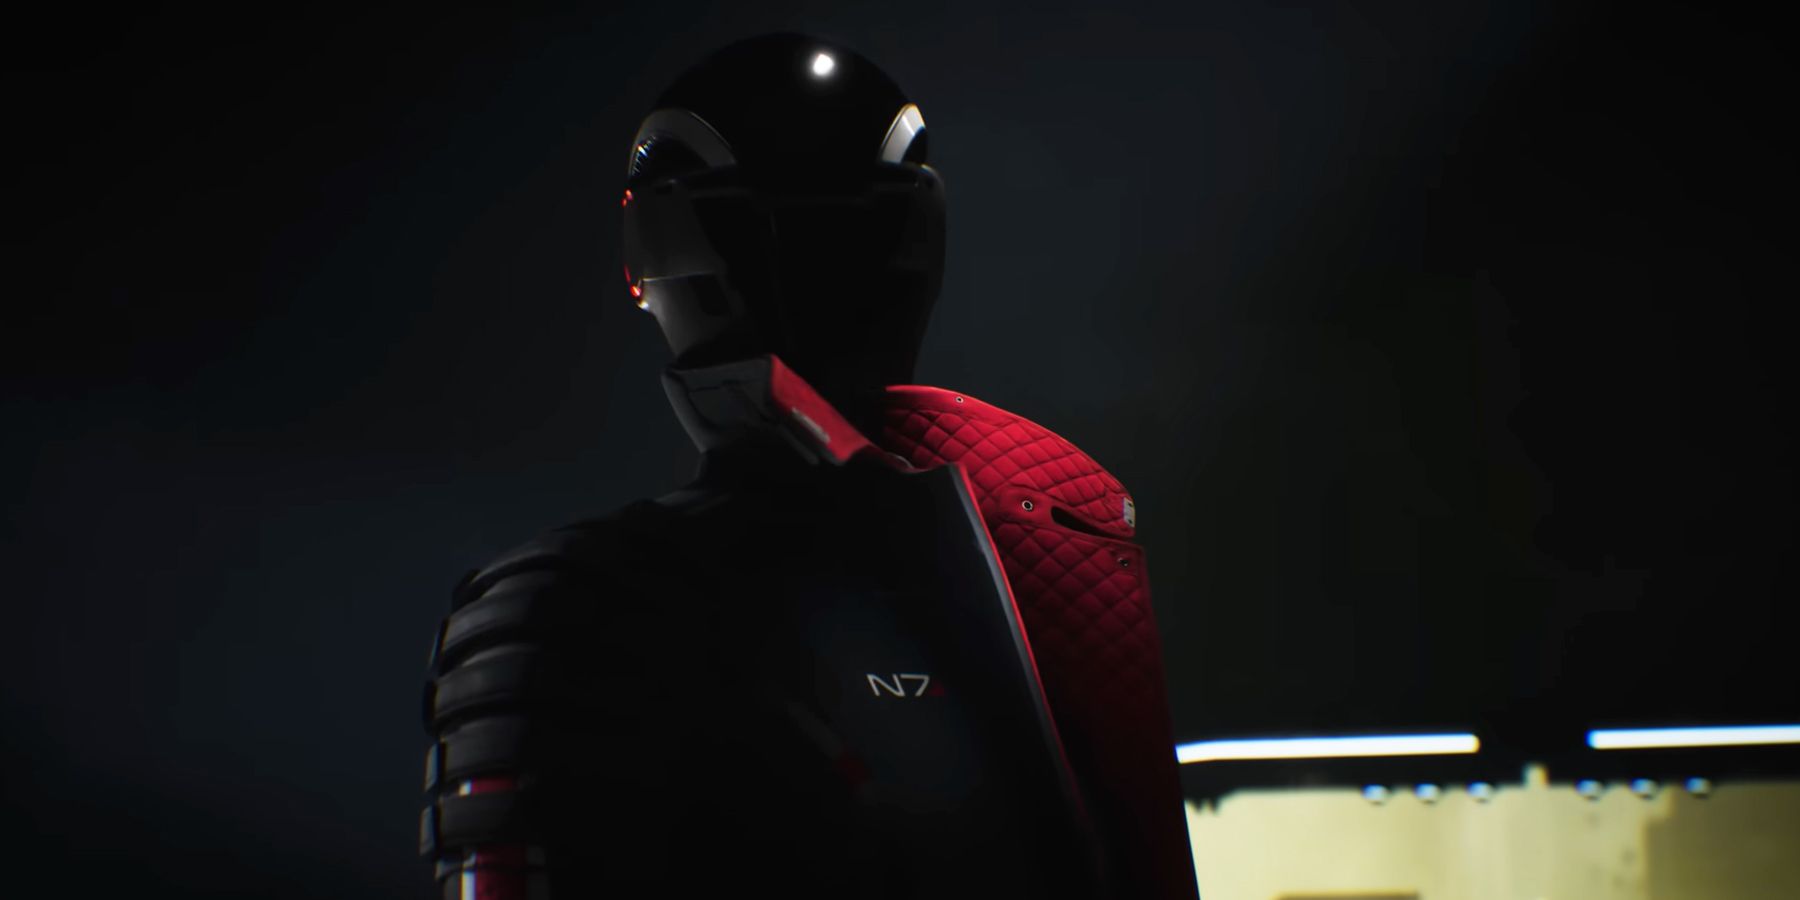 Mass Effect 4 N7 Day 2023 teaser trailer